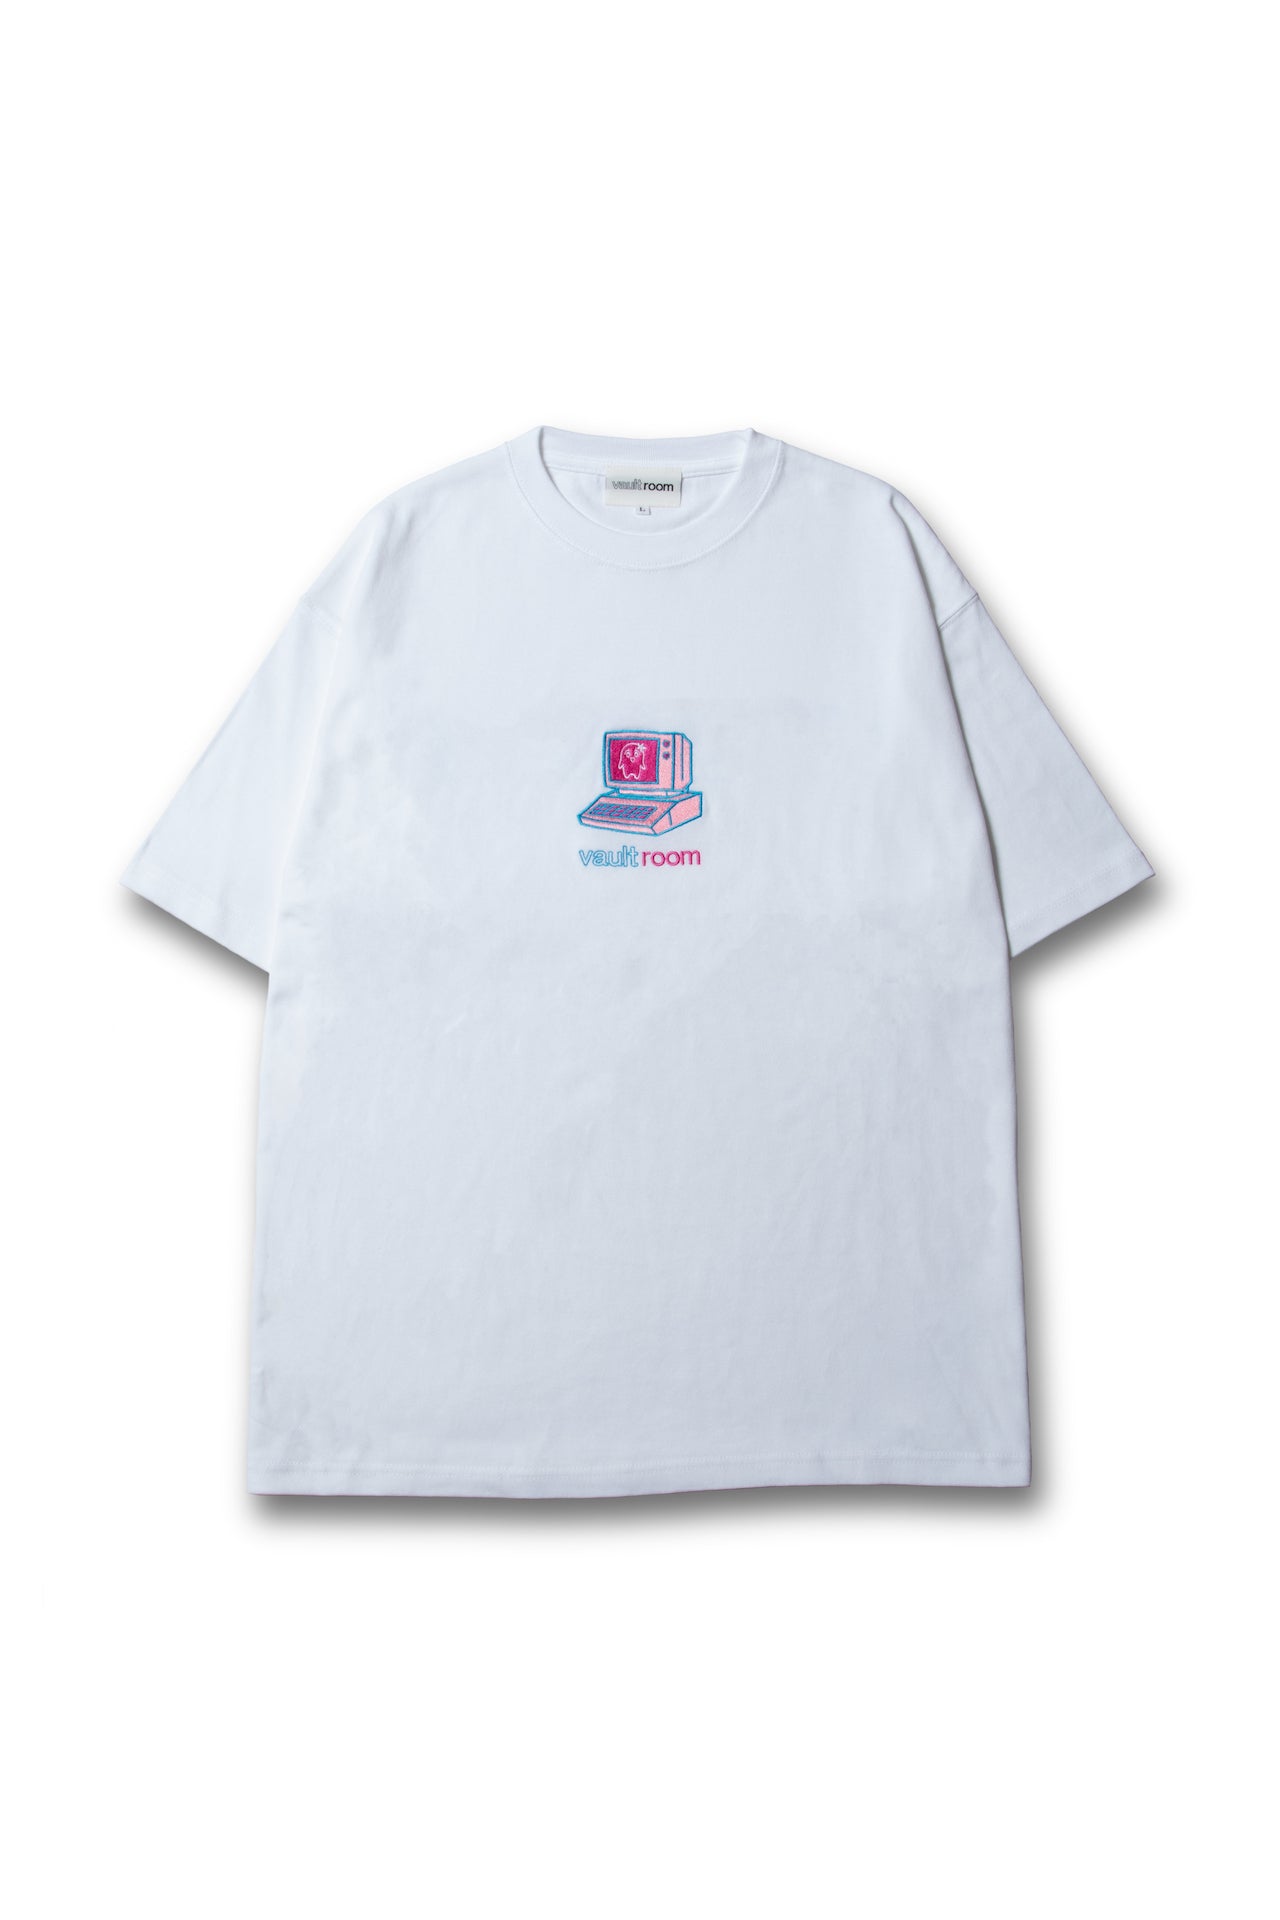 メンズvaultroom sqla tee Mサイズ - Tシャツ/カットソー(半袖/袖なし)